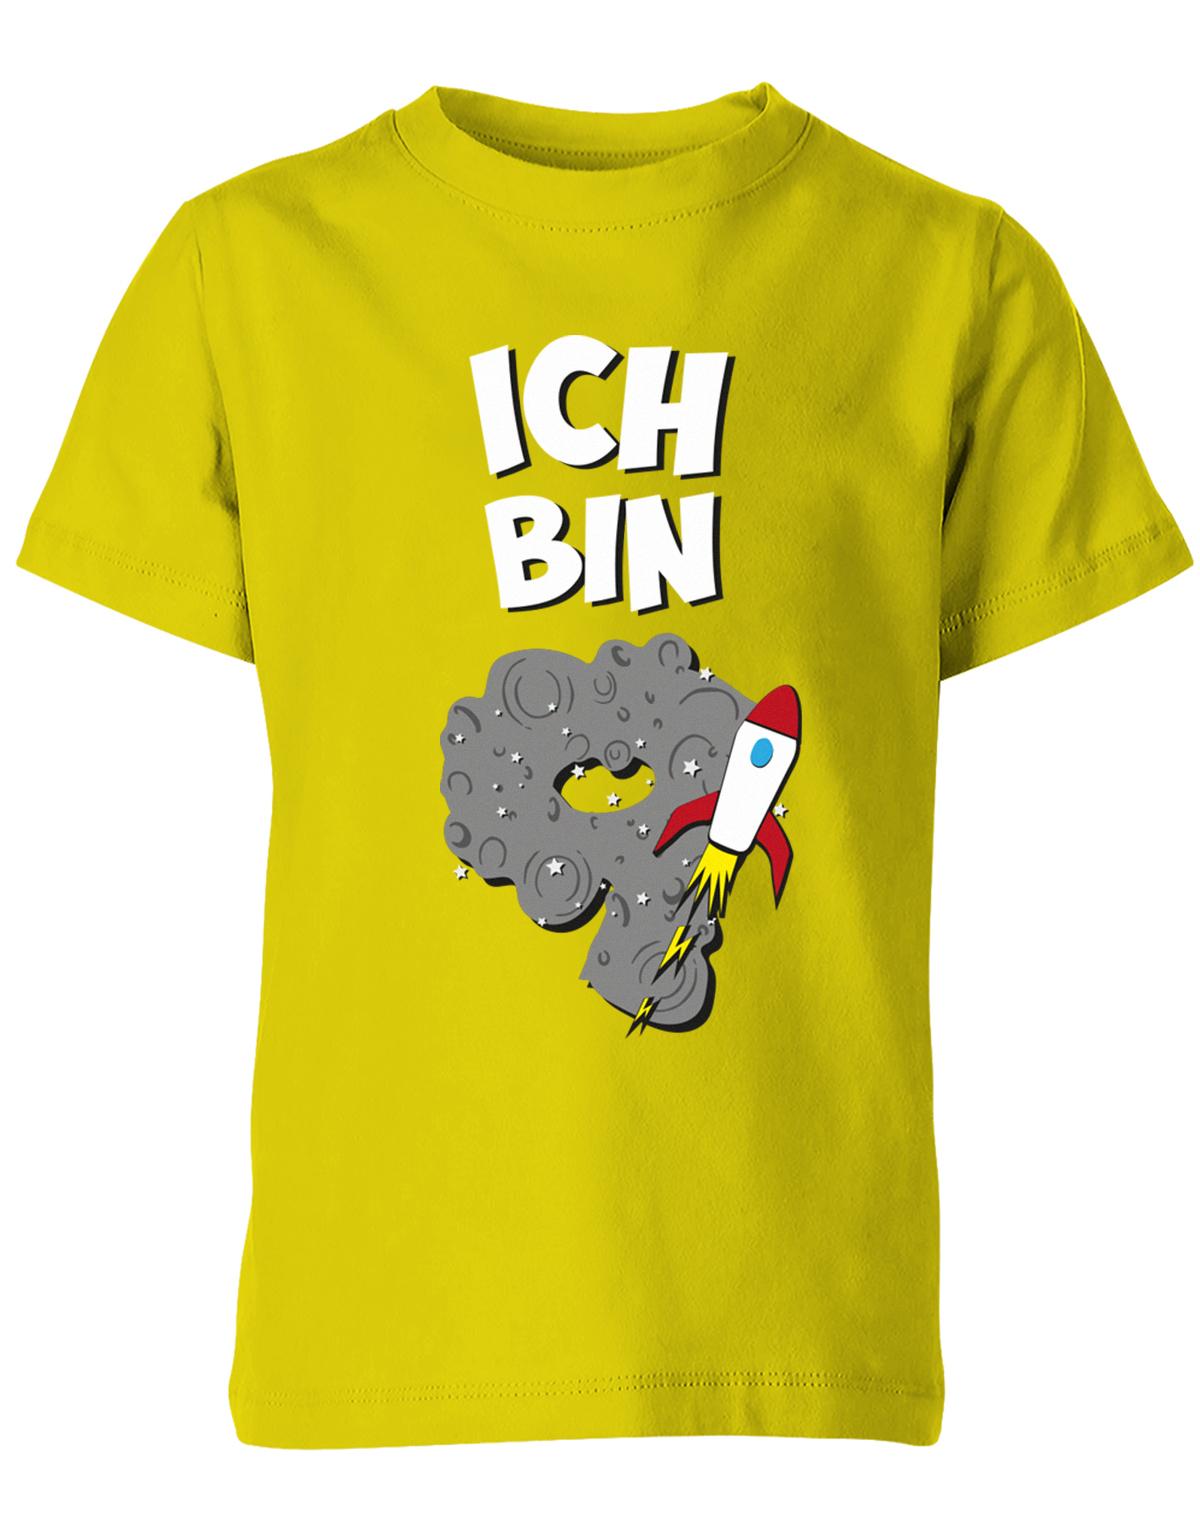 ich-bin-9-weltraum-rakete-planet-geburtstag-kinder-shirt-gelb